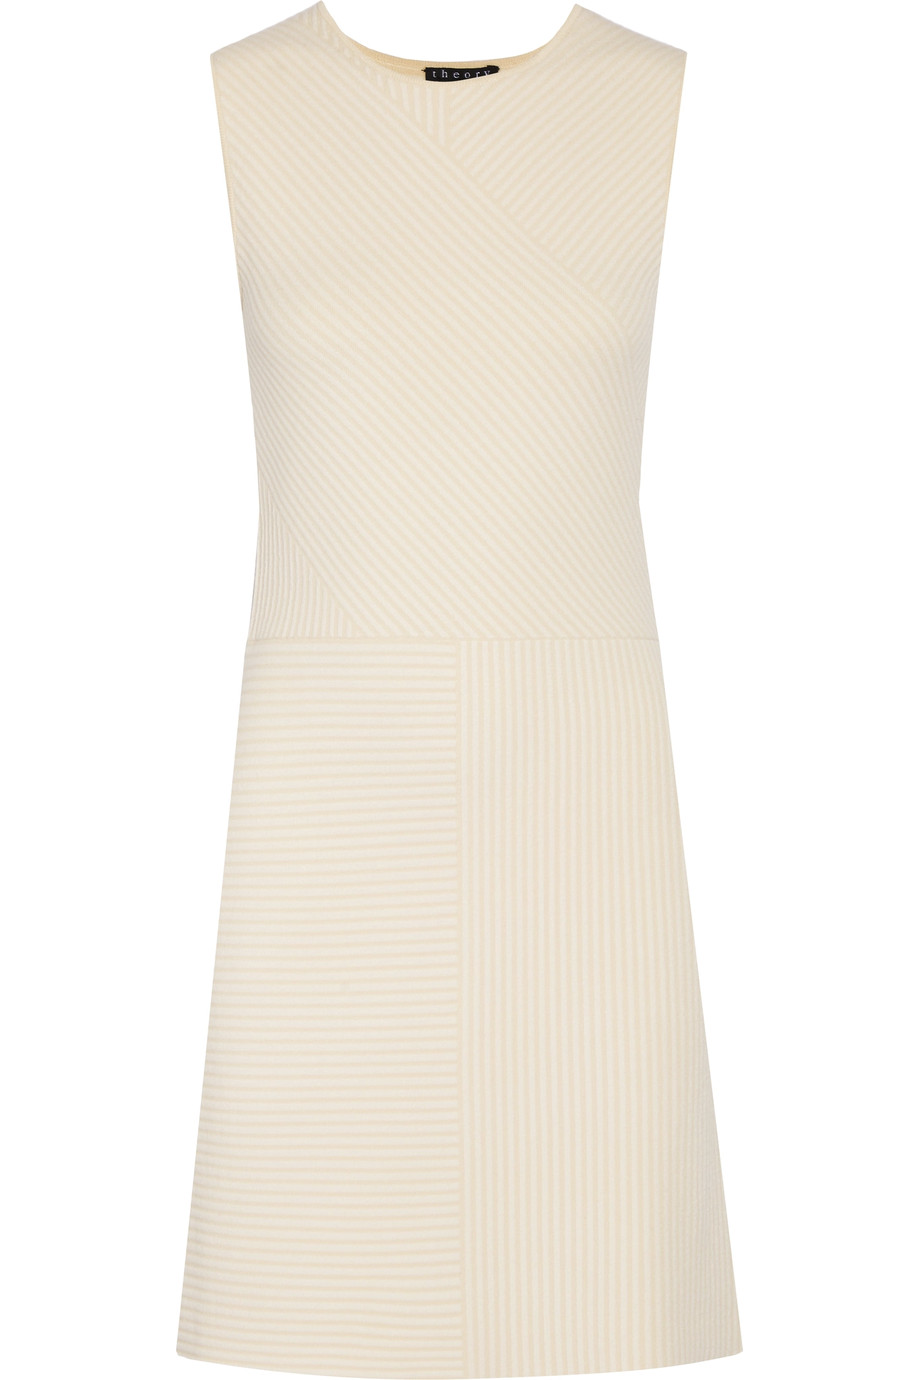 Theory Irelia Striped Stretch-knit Mini Dress | ModeSens